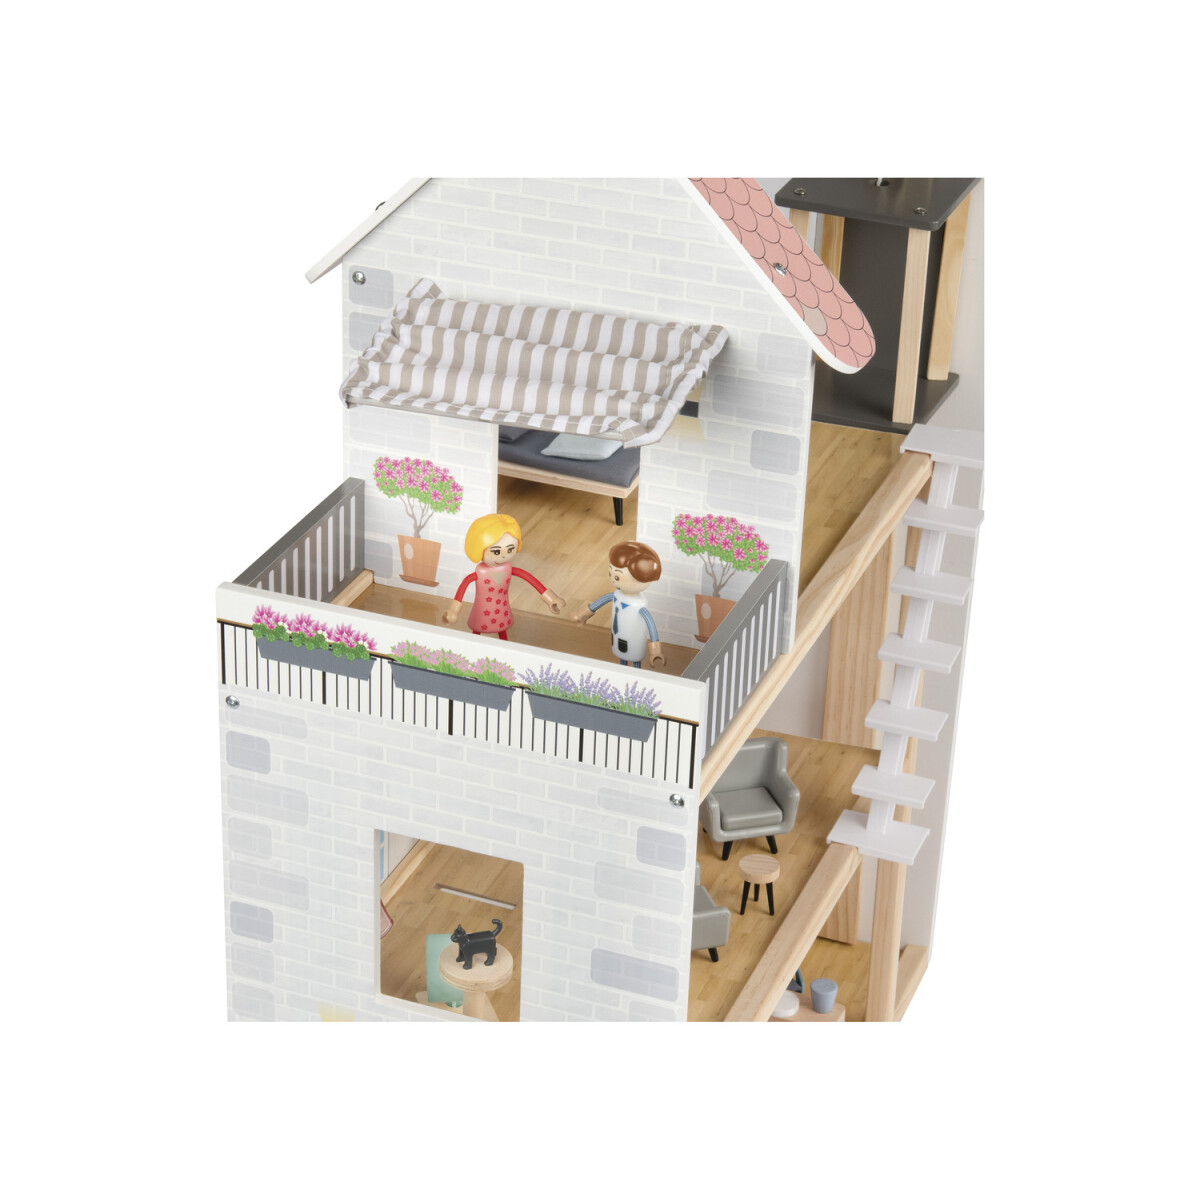 Playtive Holz Puppenhaus, 54-teilig, mit 2 Puppen - B-Ware neuwertig, 49,99  €